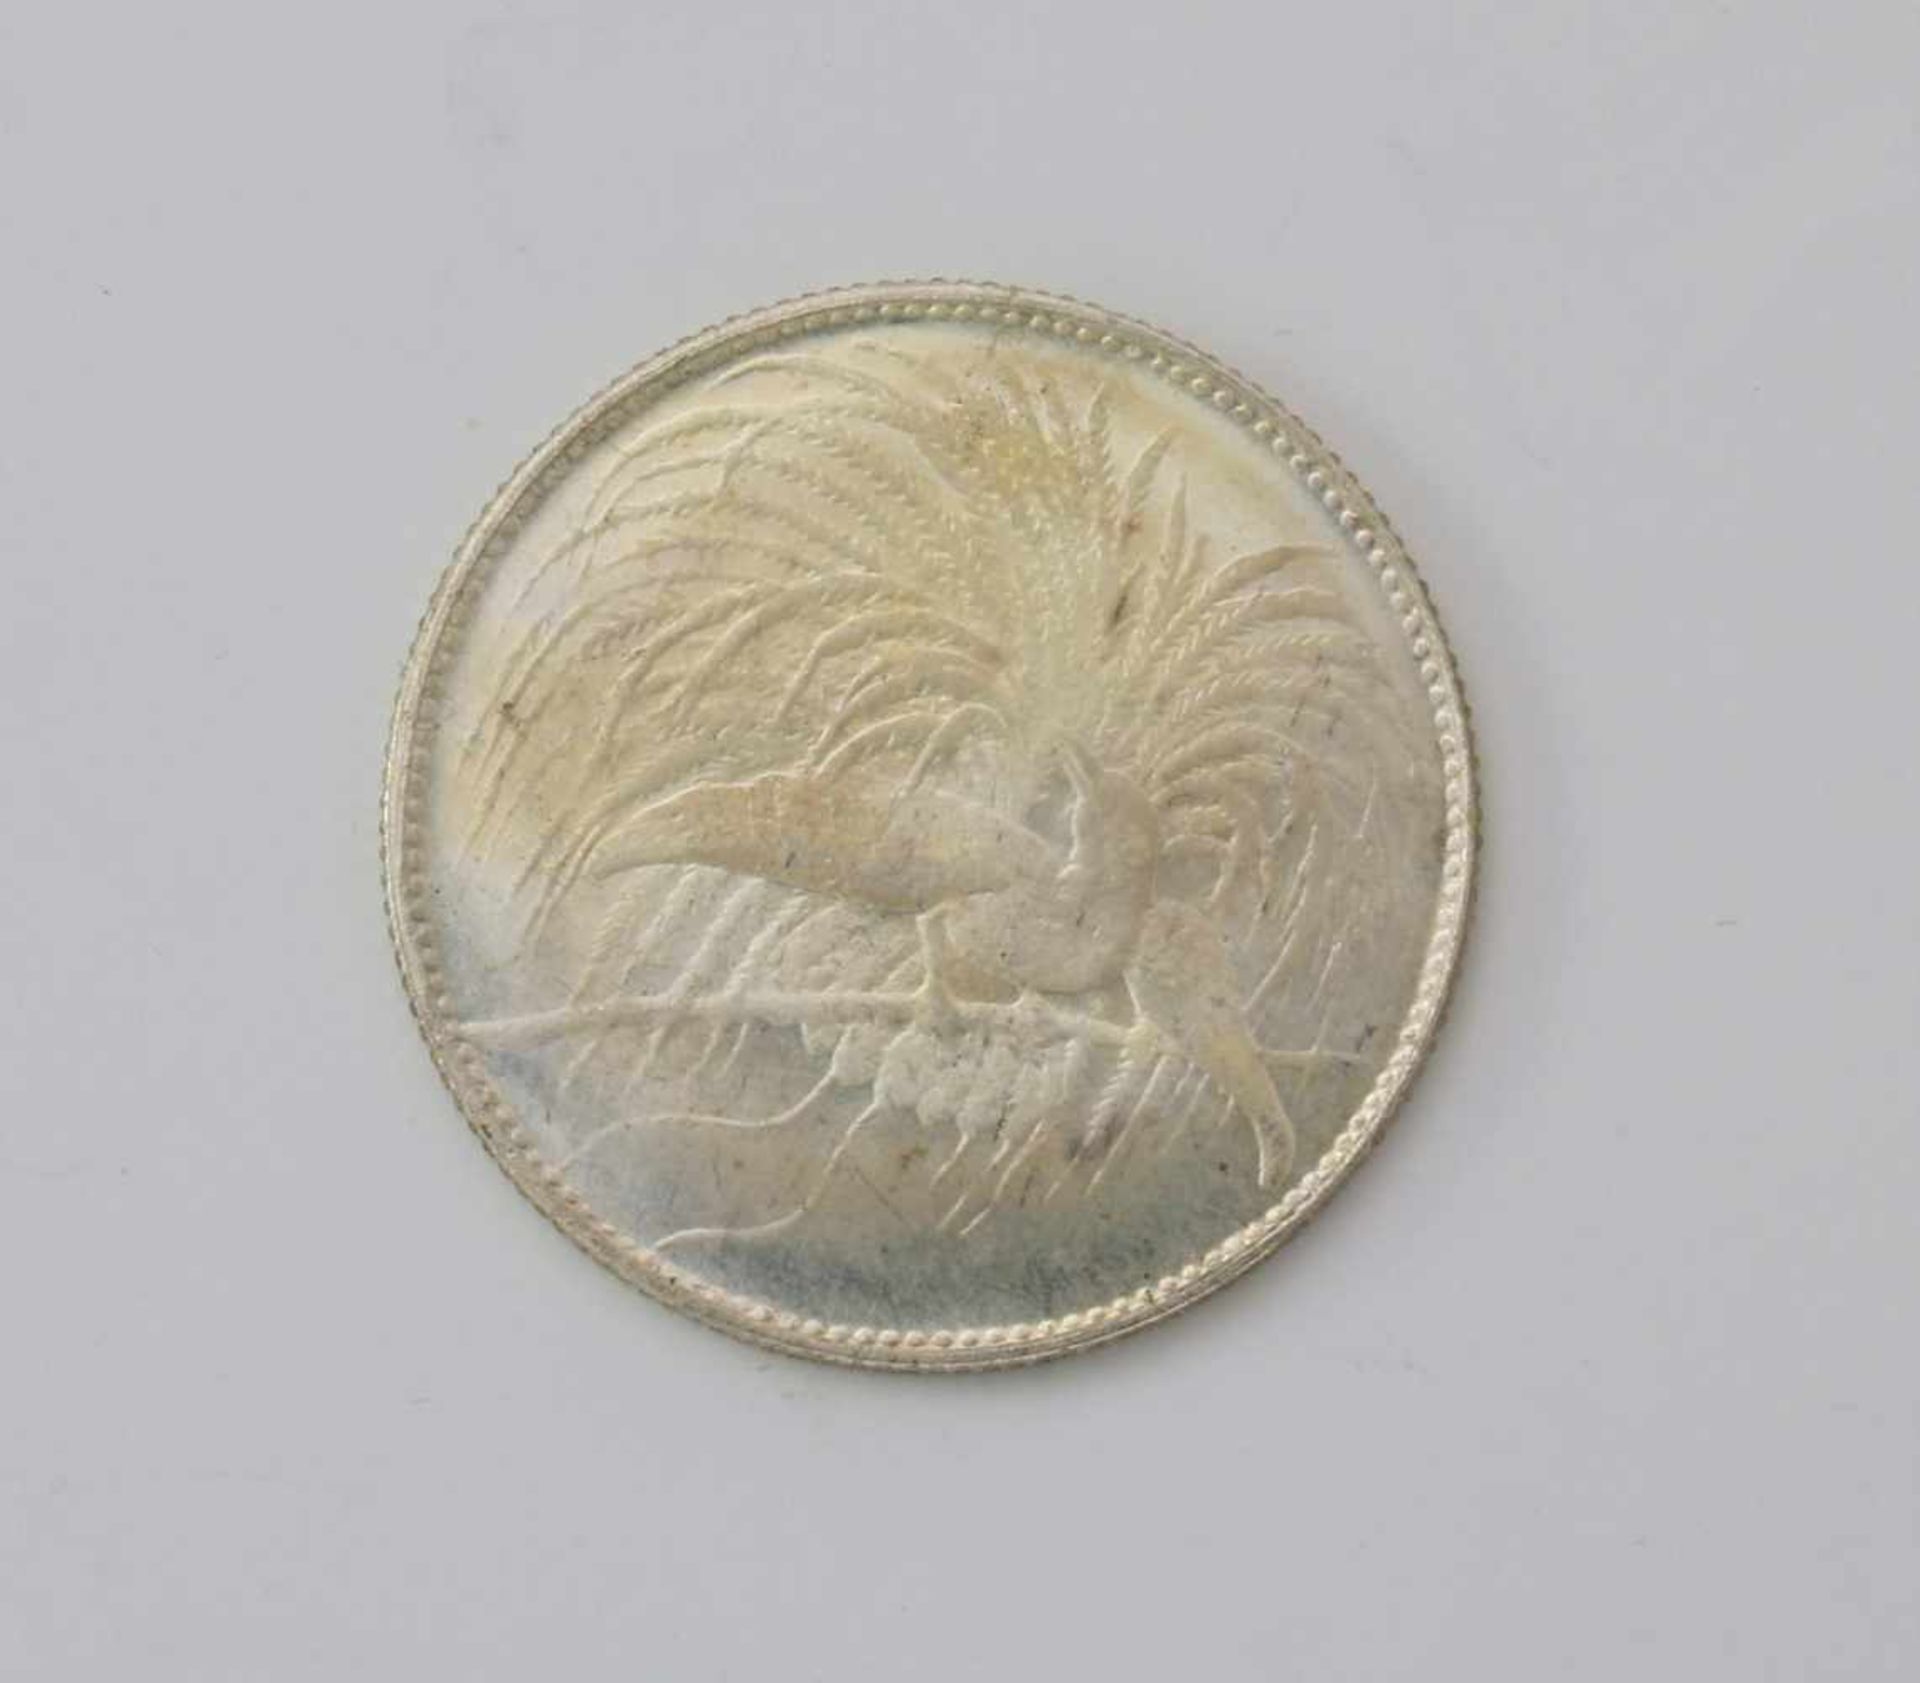 1 Neuguinea Mark 1894Silbermünze, Spiegelglanz, A, 6 g., Ø 7,4 mm, in der Kapsel.